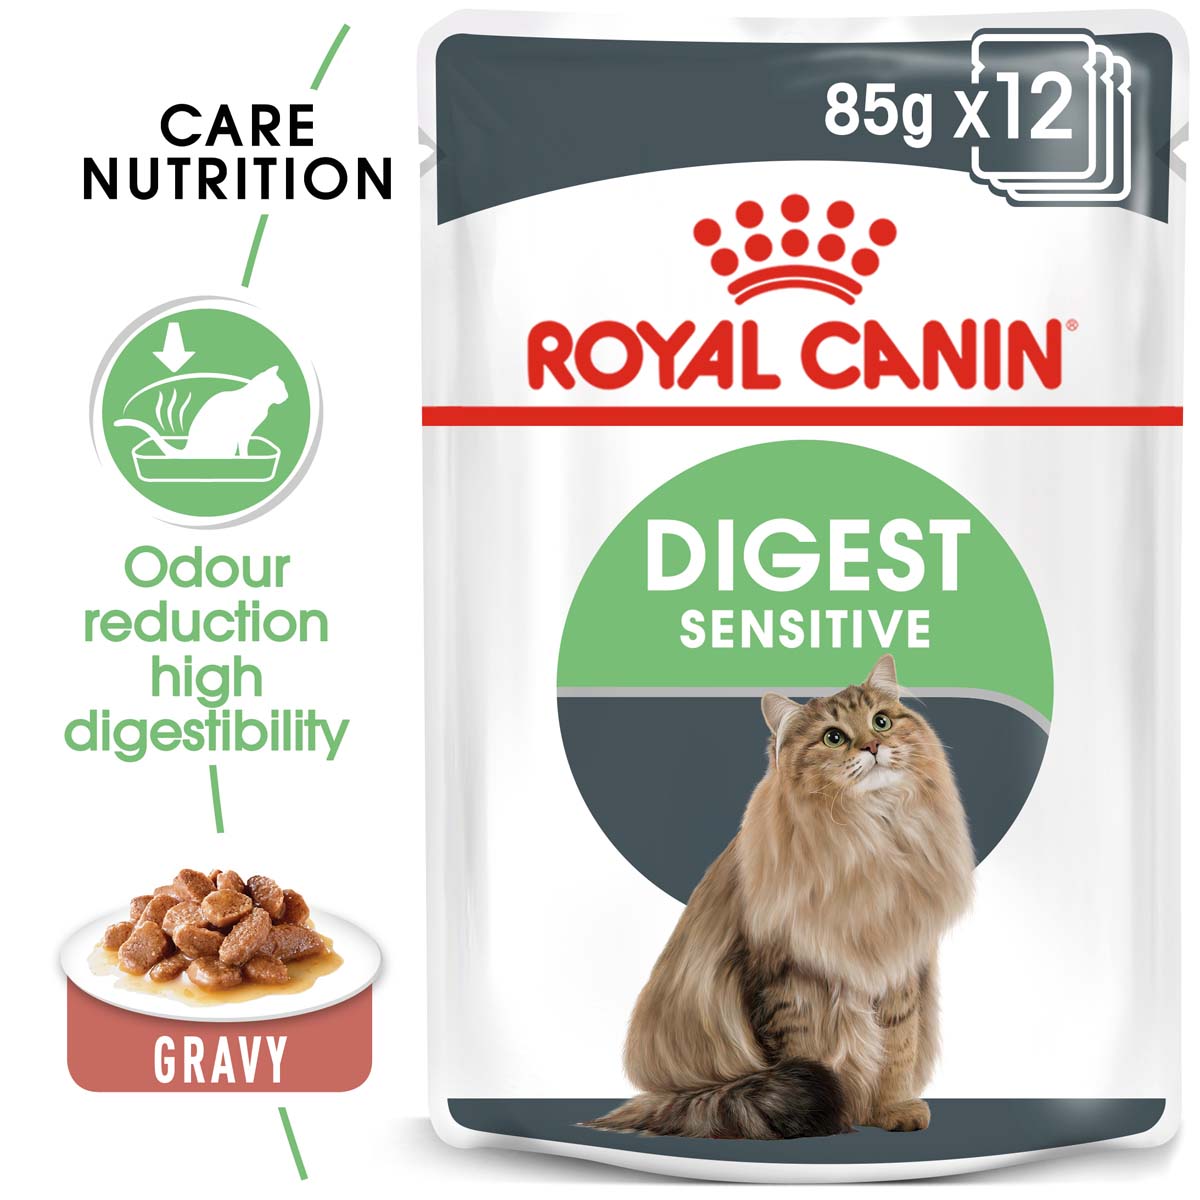 ROYAL CANIN Digest Sensitive pro kočky s citlivým zažíváním